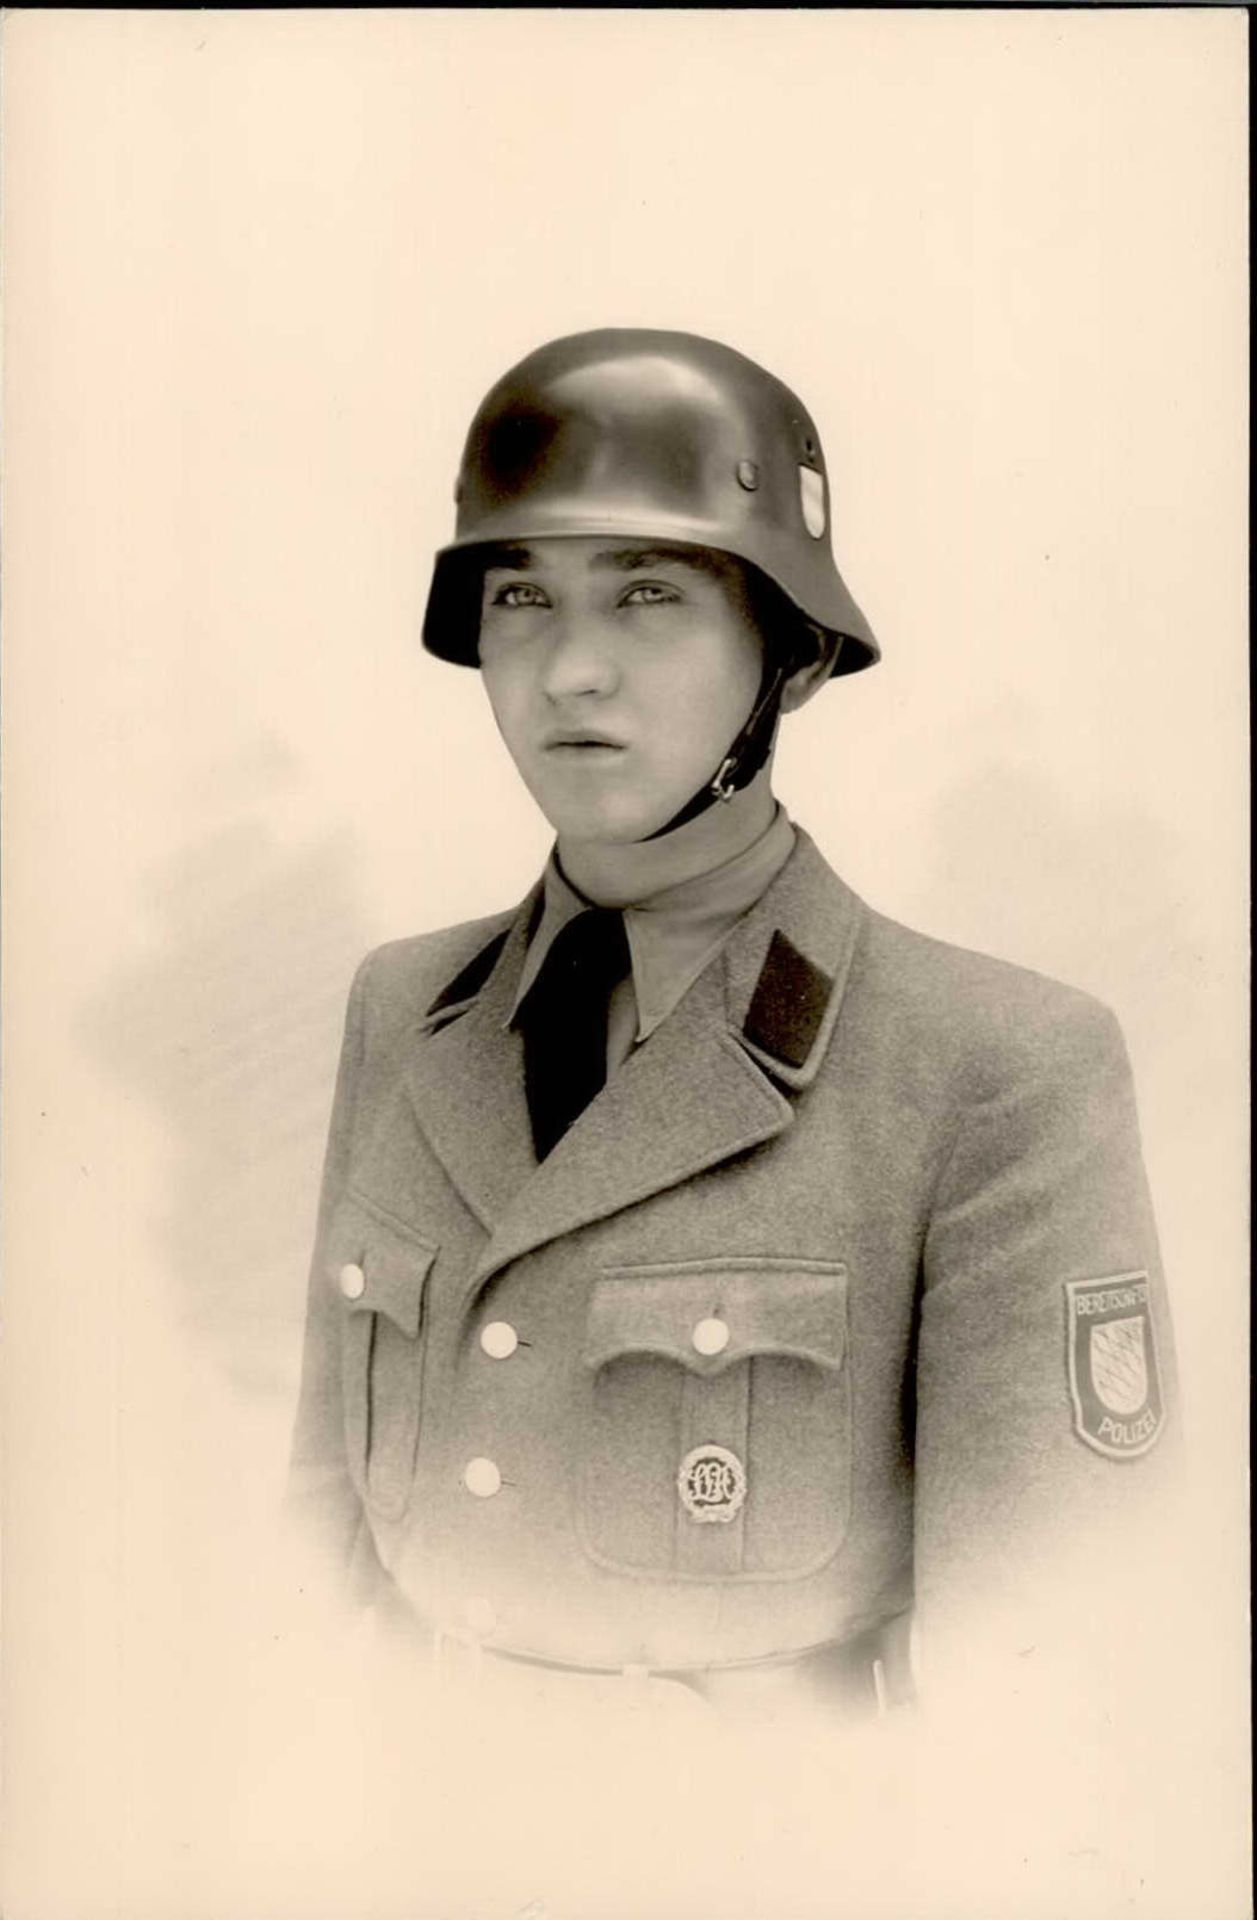 Polizei Bayern Portrait eines Bereitschafts-Polizisten Stahlhelm I-II